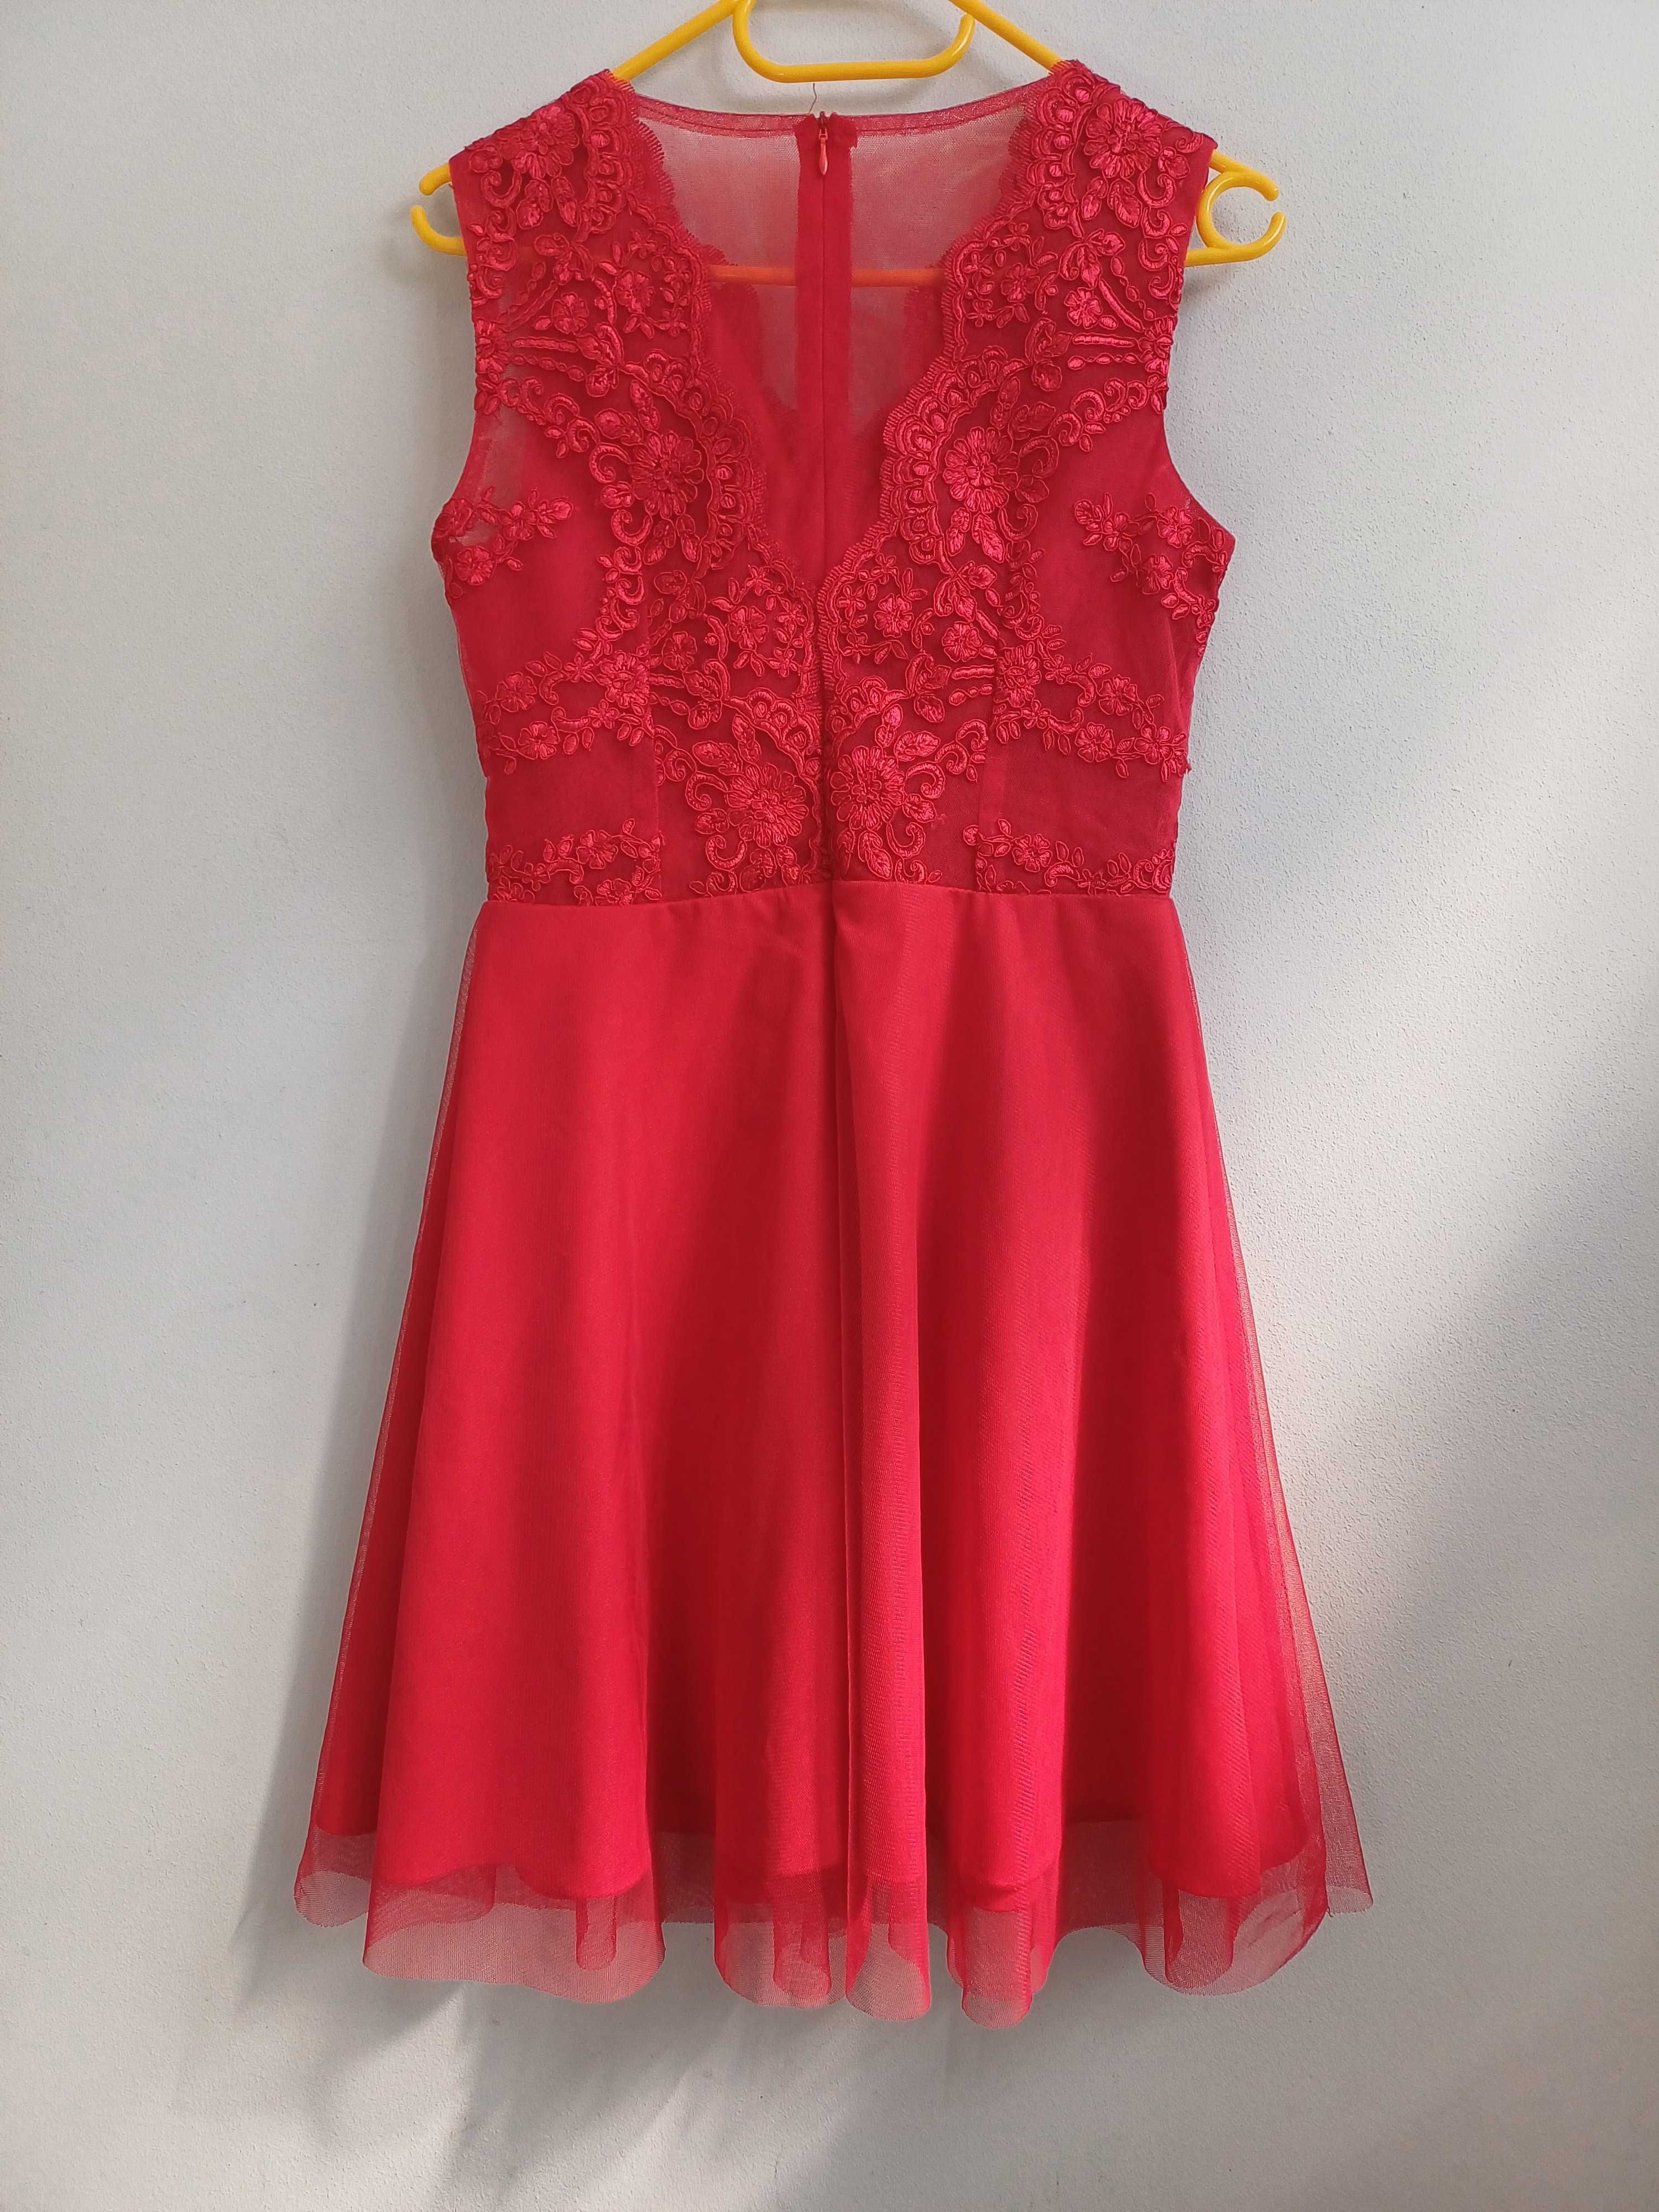 Sukienka czerwona z tiulem na przyjęcie, wesele, chrzciny itd r. S/M